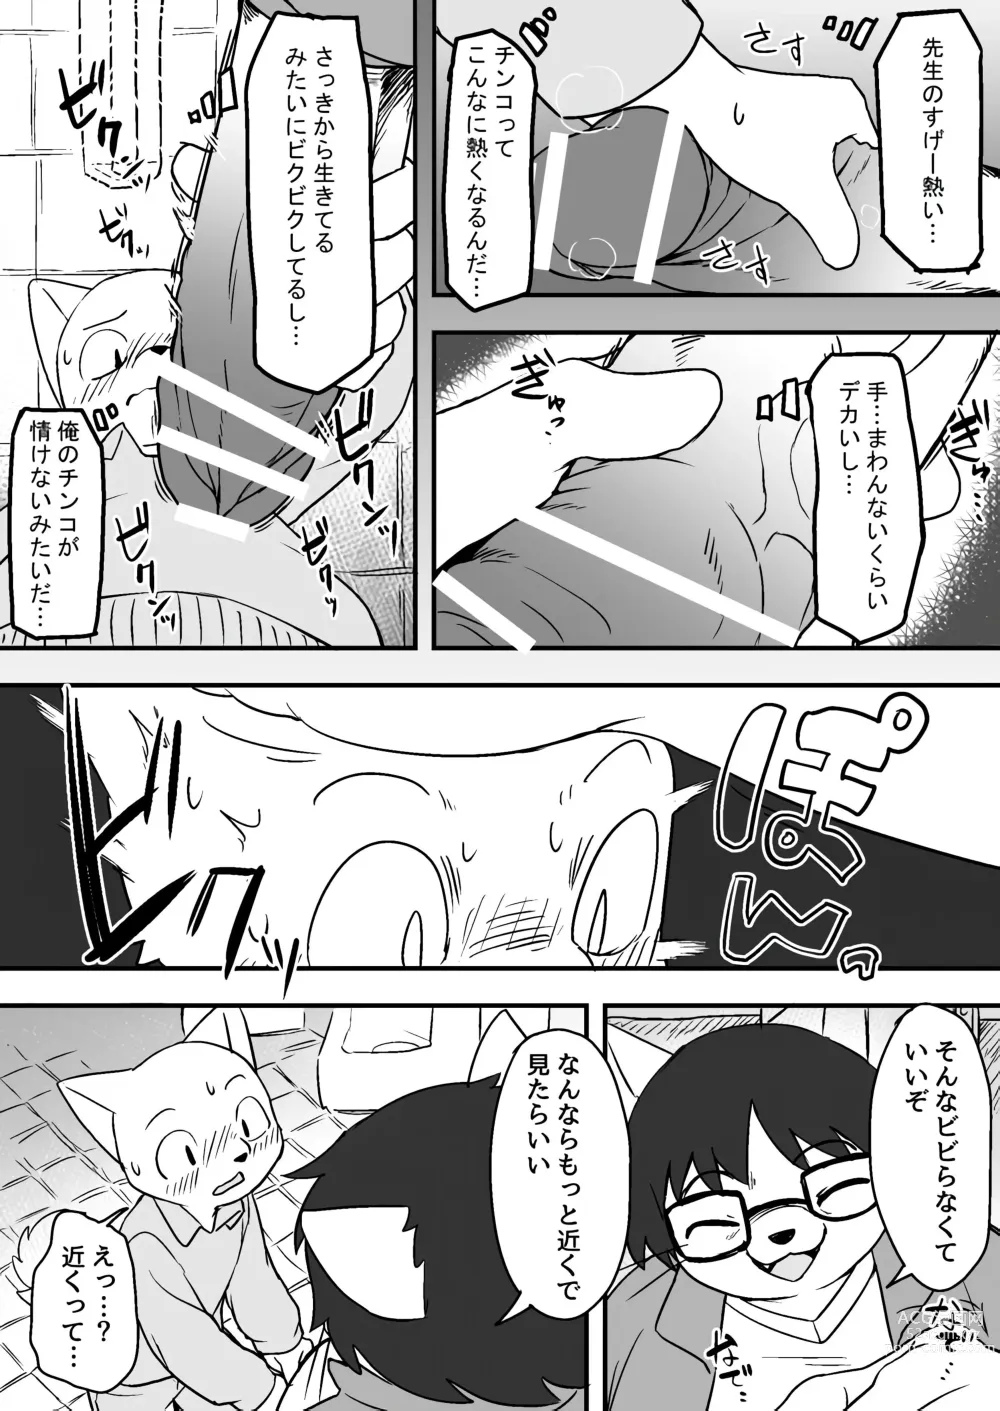 Page 5 of doujinshi Manmosu Marimo - Sensei Story #1